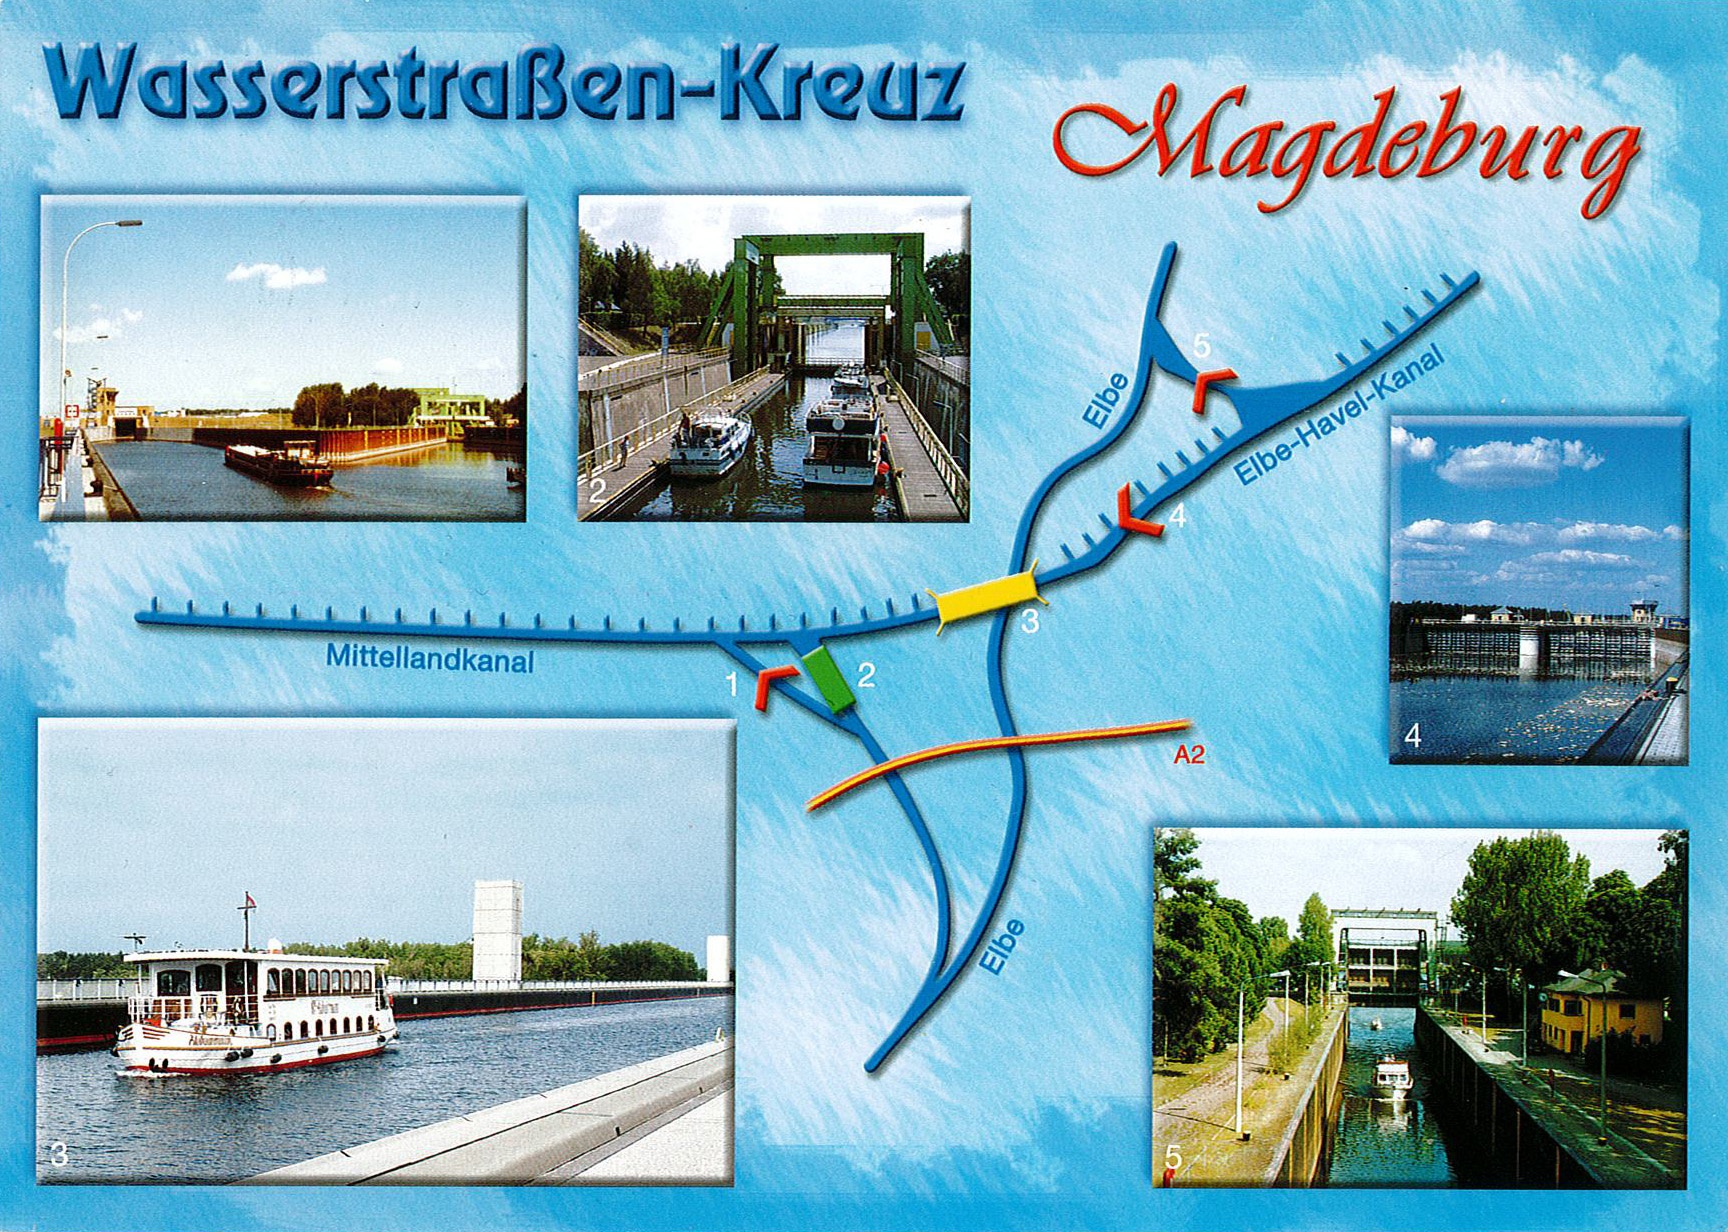 Wasserstraße-Kreuz Magdeburg mit Sonderbriefmarke 100 Jahre Mittellandkanal (Museum Wolmirstedt RR-F)